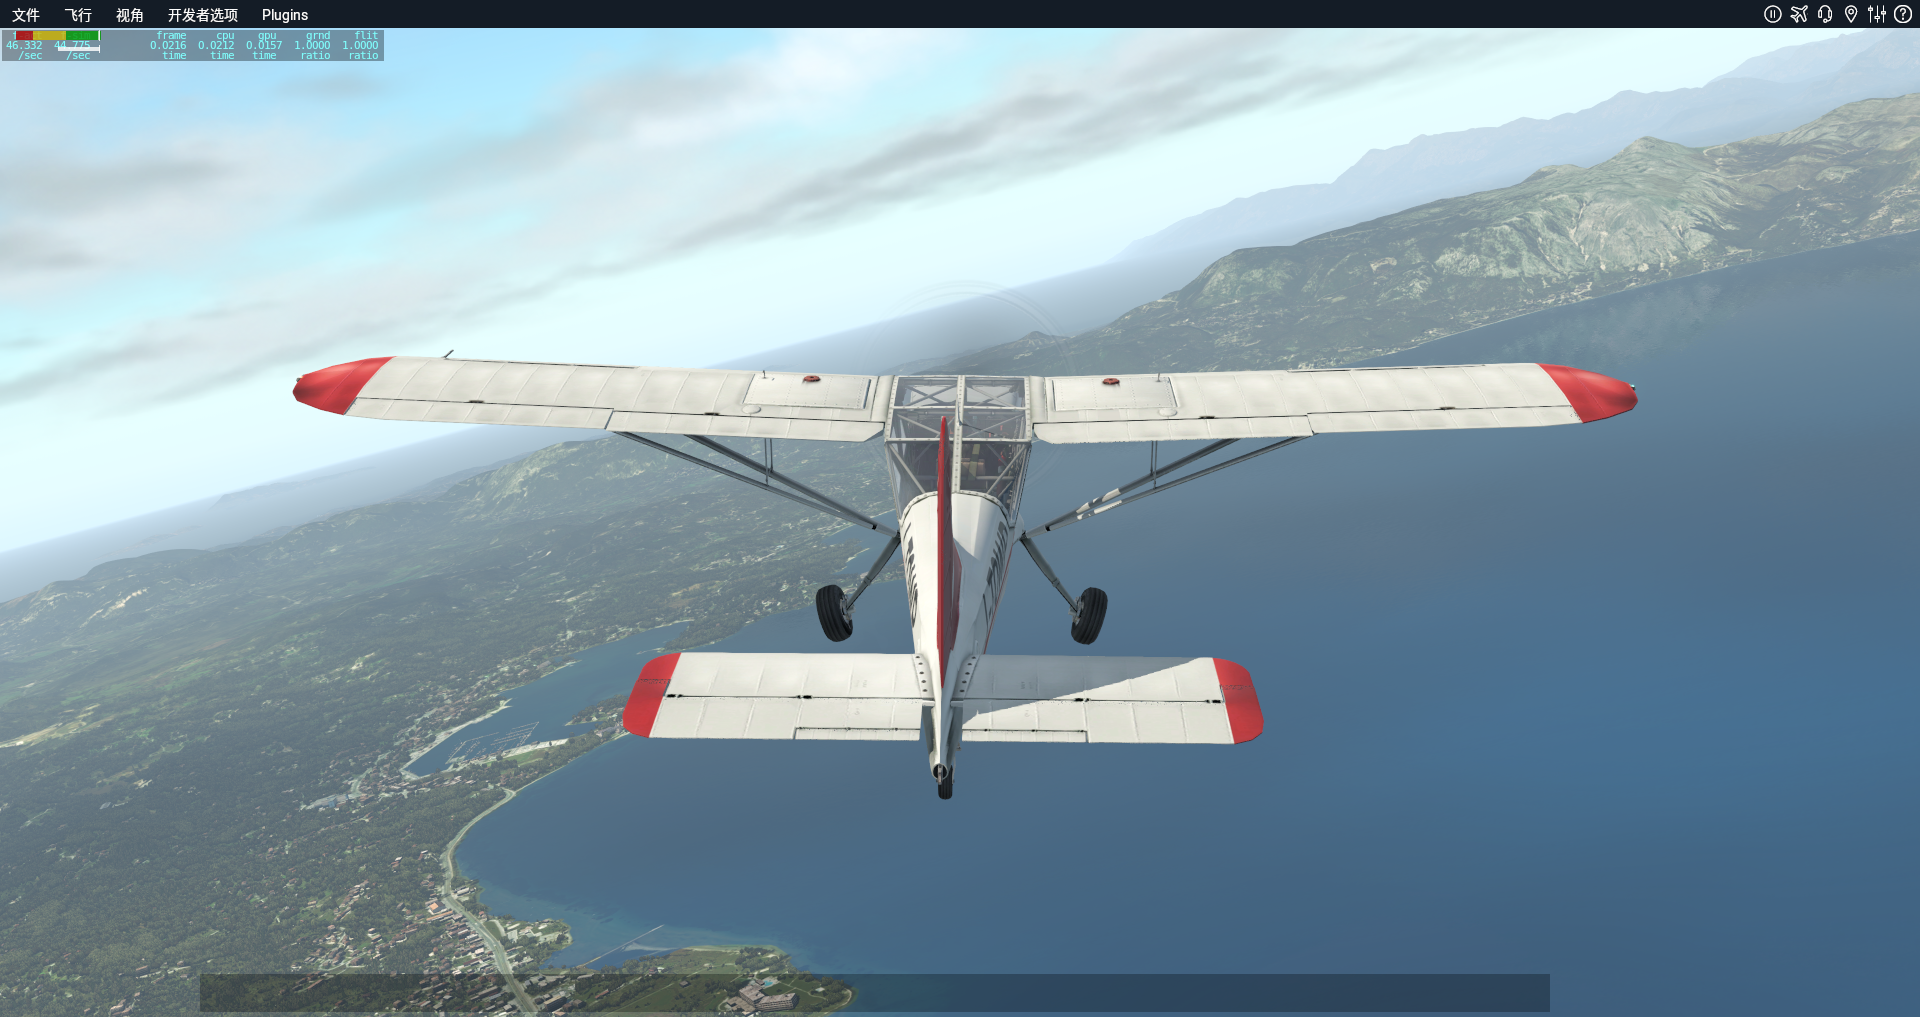 XP11自带小飞机科孚岛随意飞行美图-8363 